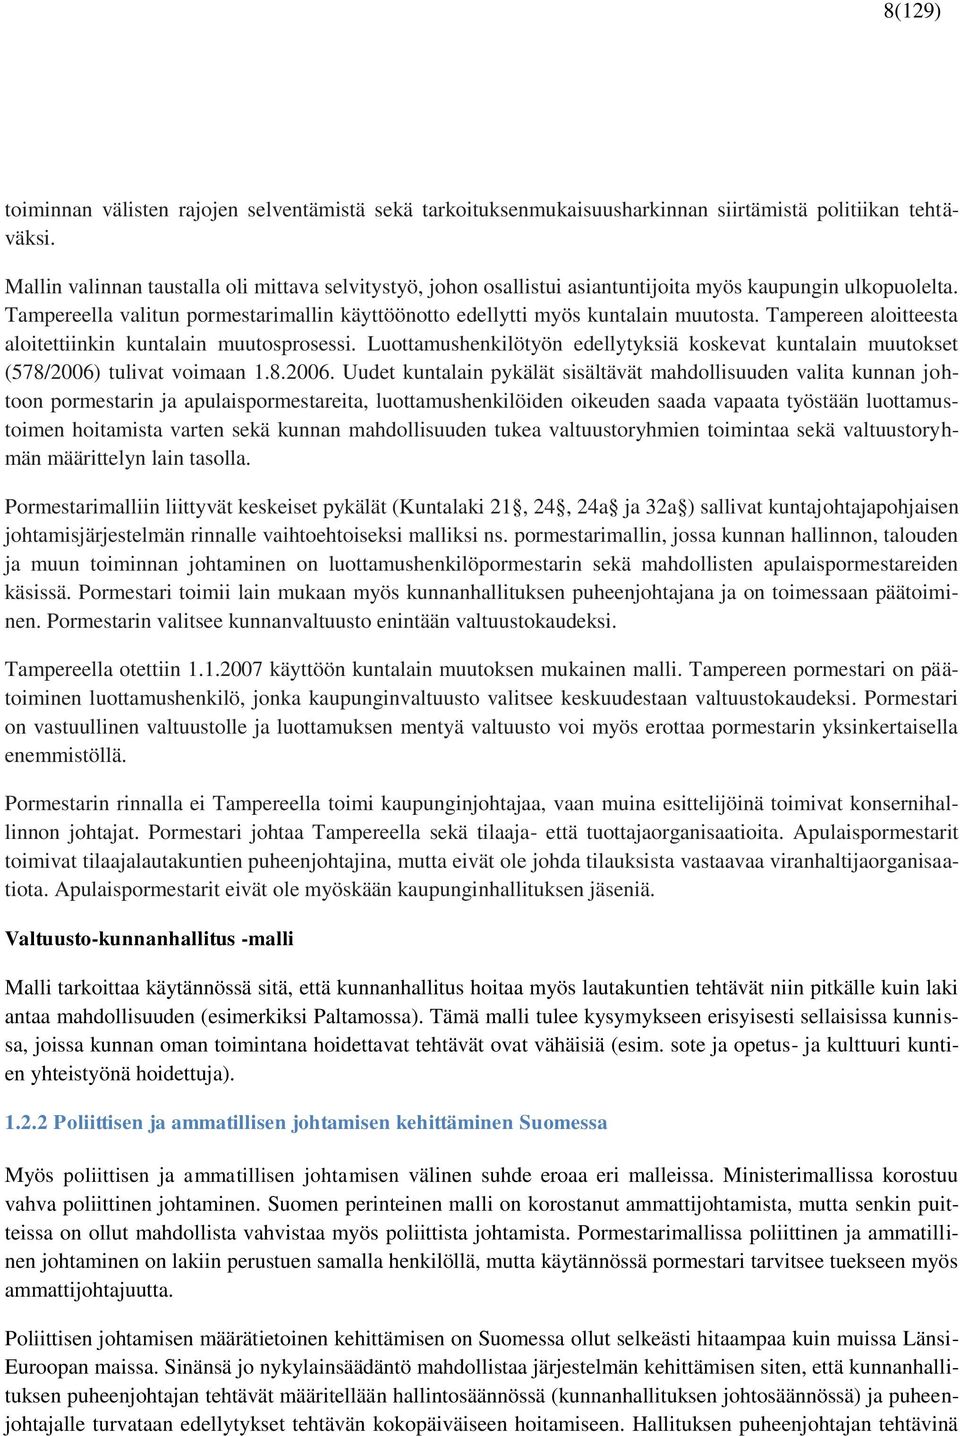 Tampereen aloitteesta aloitettiinkin kuntalain muutosprosessi. Luottamushenkilötyön edellytyksiä koskevat kuntalain muutokset (578/2006)